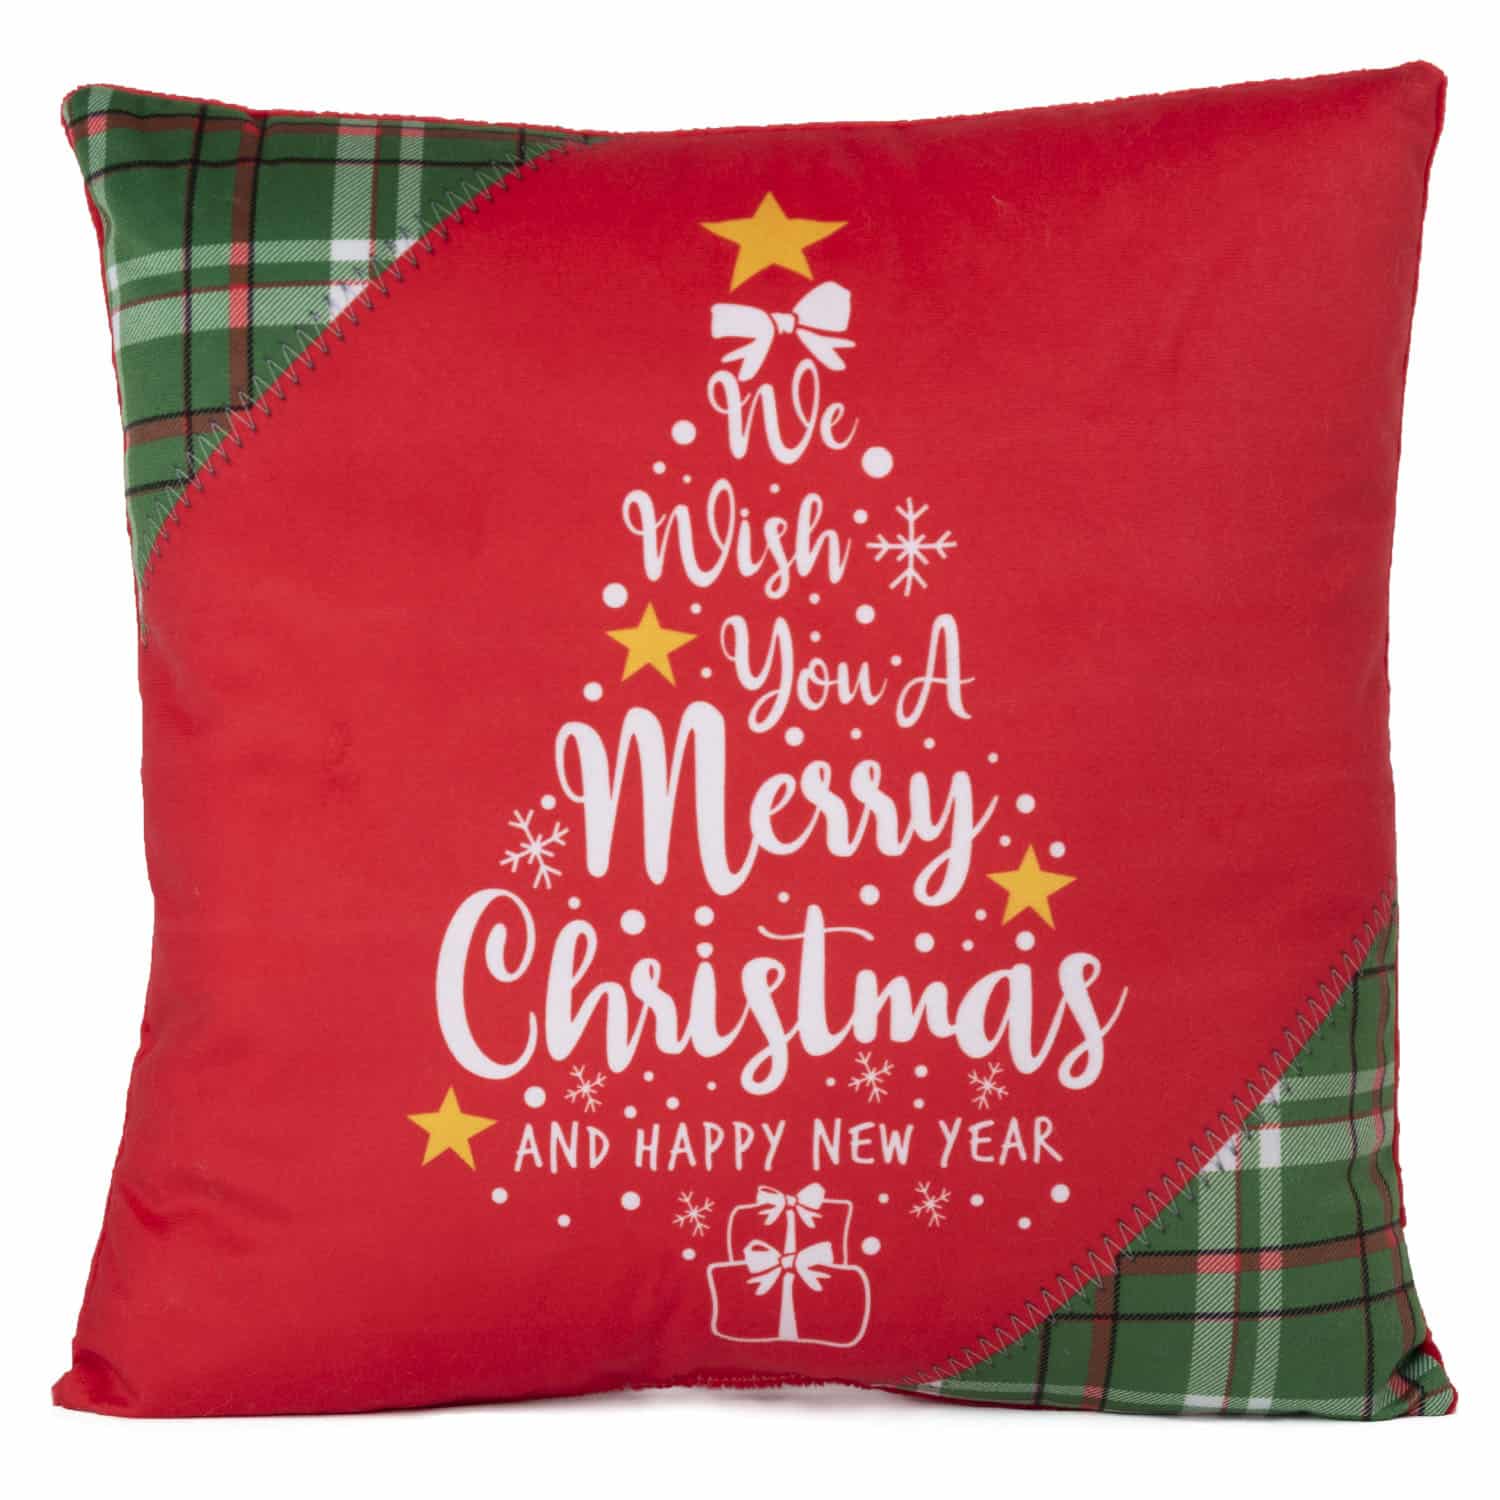 Christmas pillow with Christmas tree